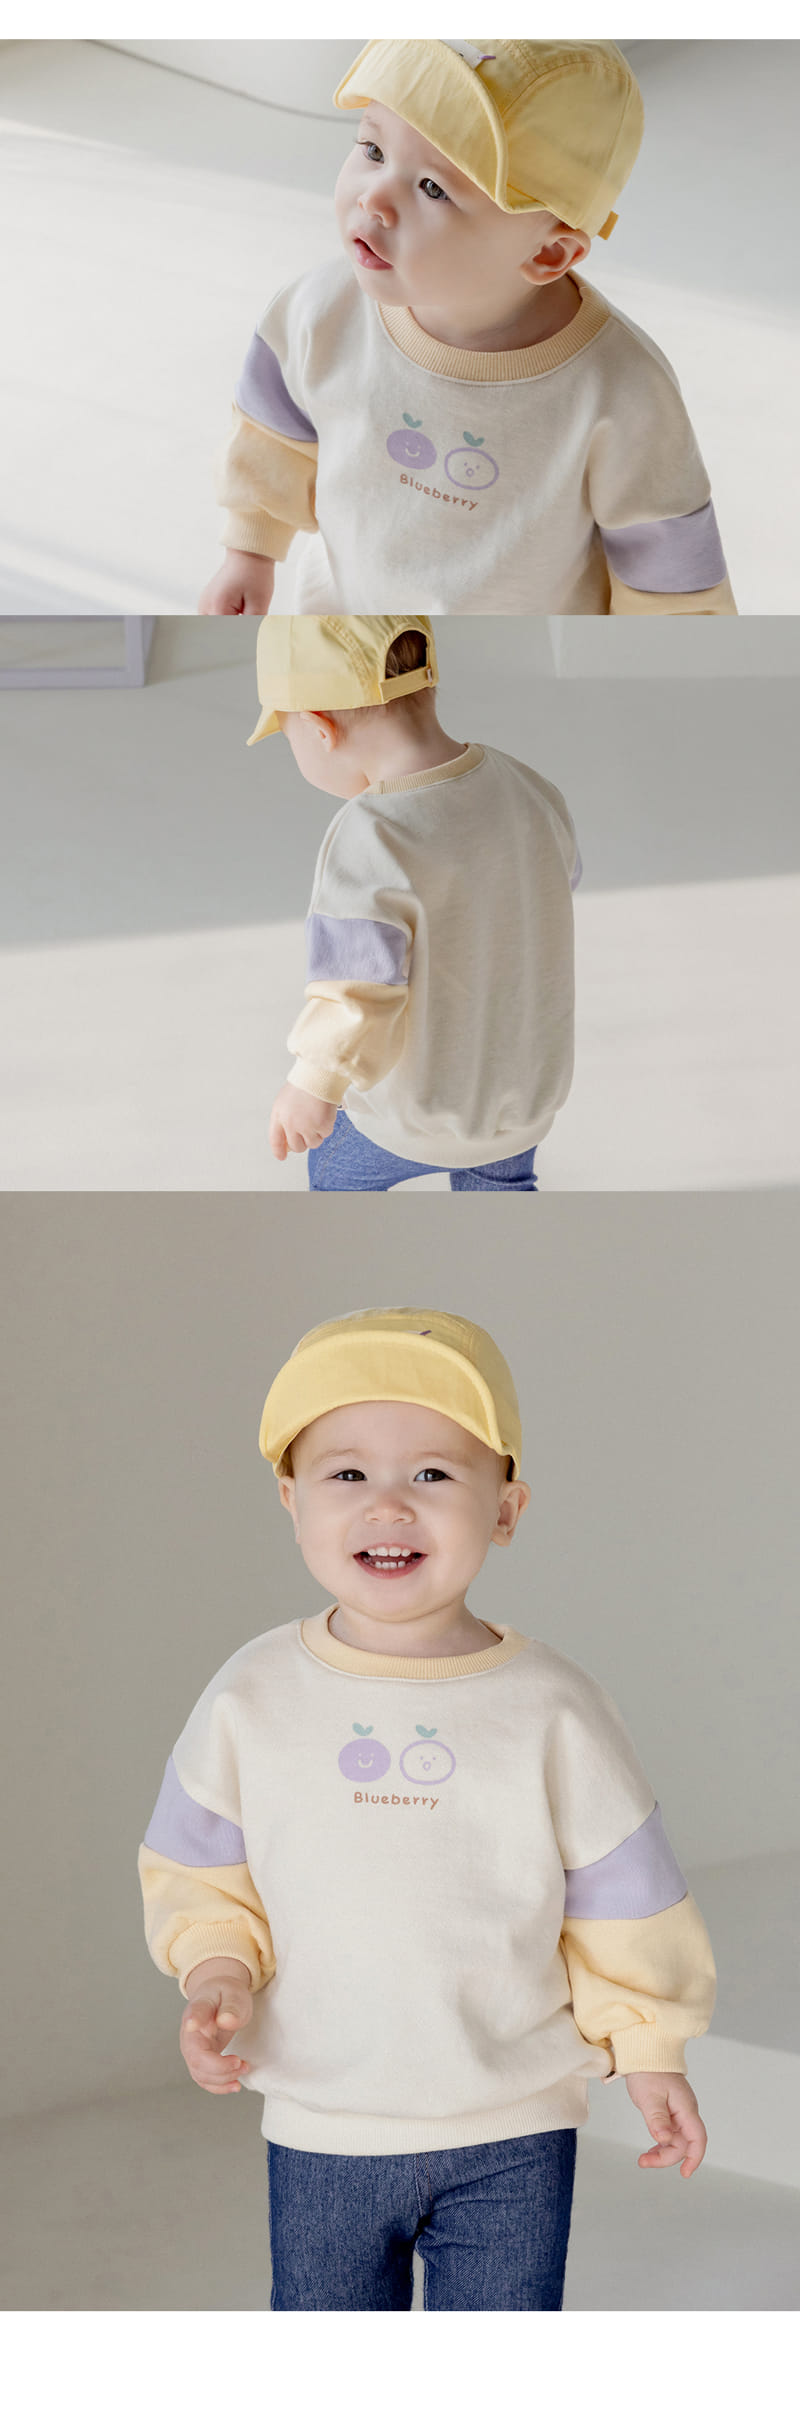 Kids Clara - Korean Baby Fashion - #babyclothing - Butter Cup Baby Sweatshirt - 6